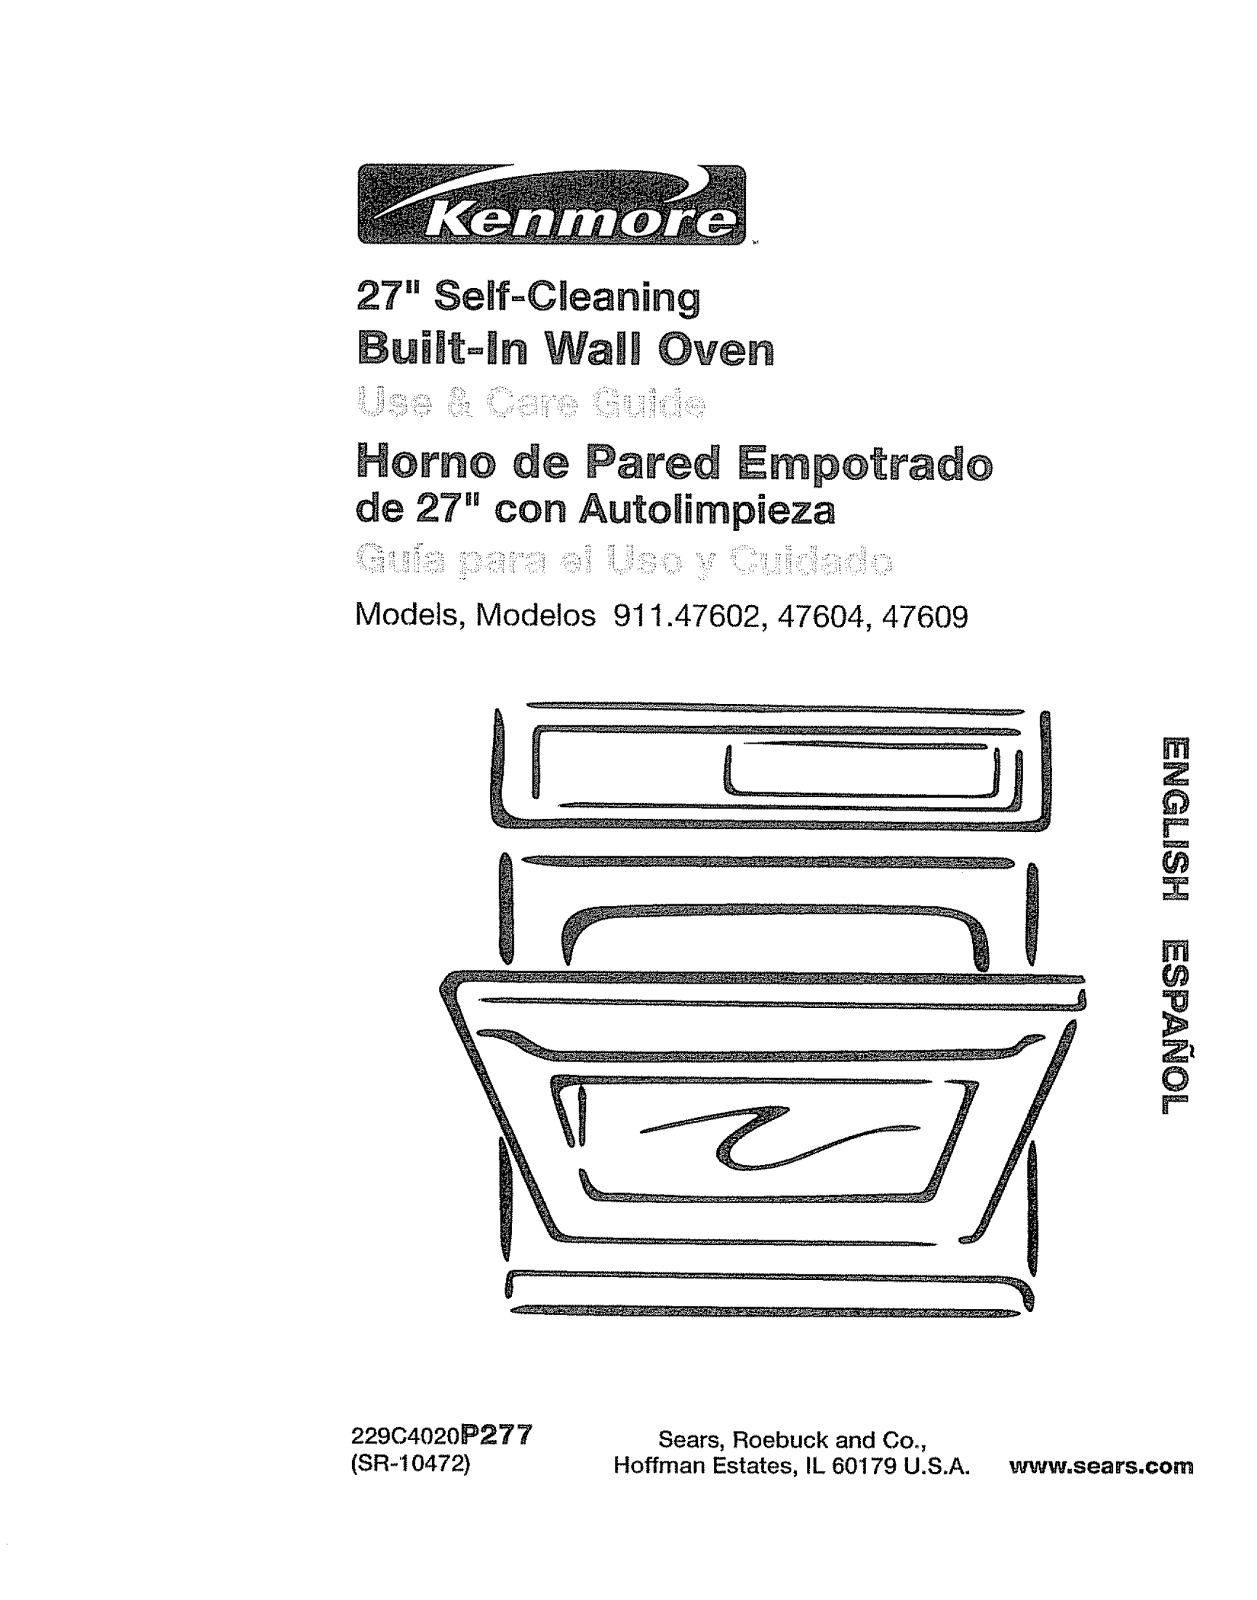 Kenmore 91147602100, 91147603100, 91147604100, 91147609100 Owner’s Manual